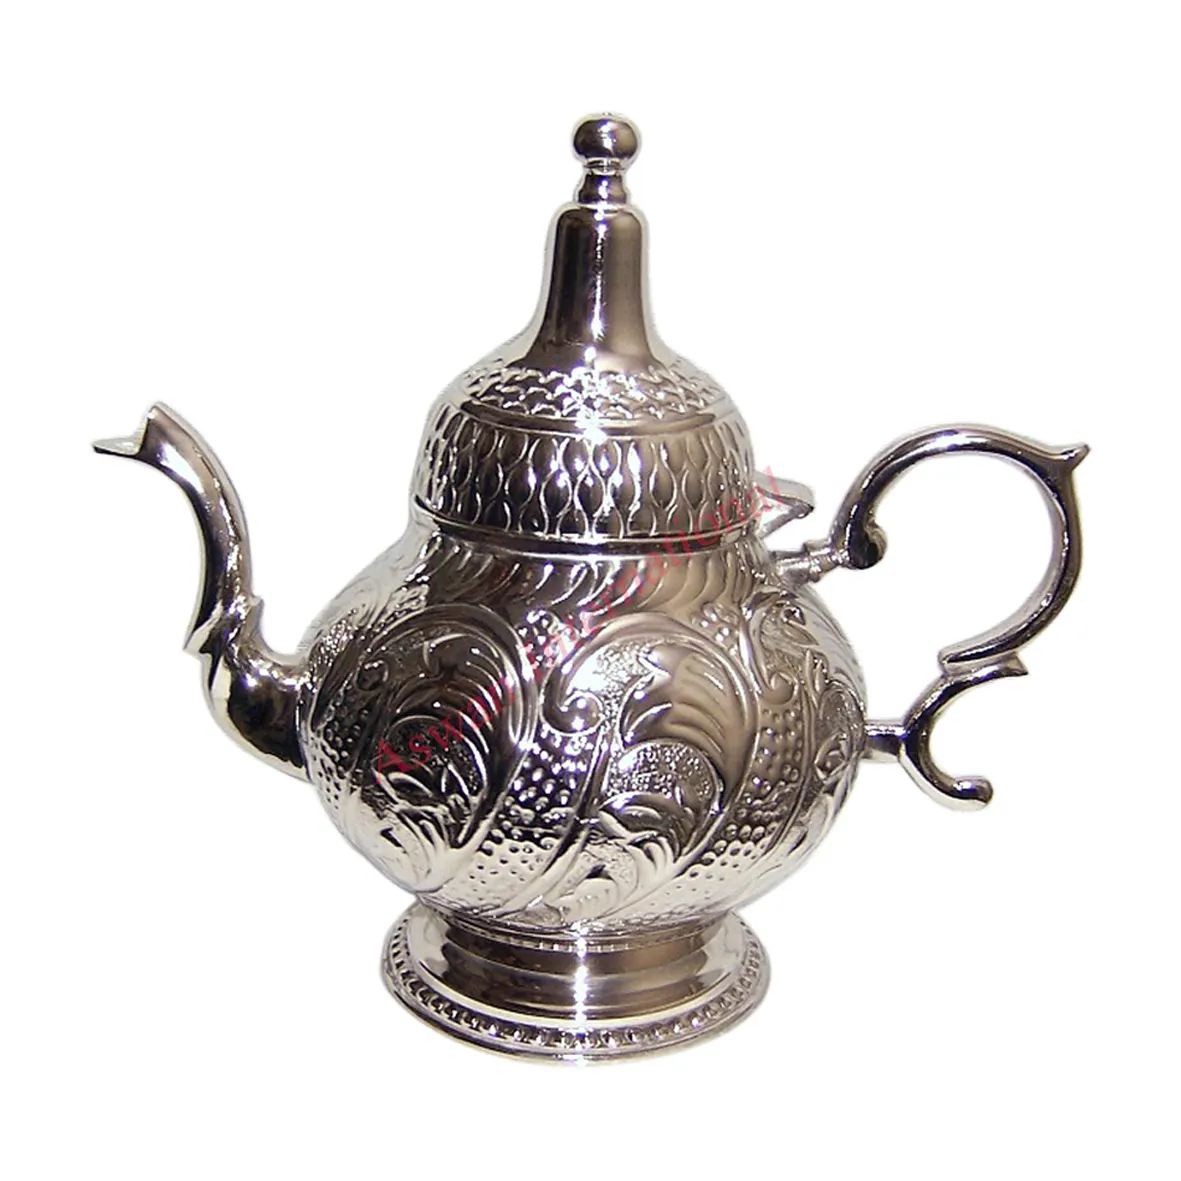 النحاس العربية Dallah الشاي إبريق قهوة ممتازة جودة اليدوية يتوهم الزخرفية الكلاسيكية التقليدية المطبخ و منضدية